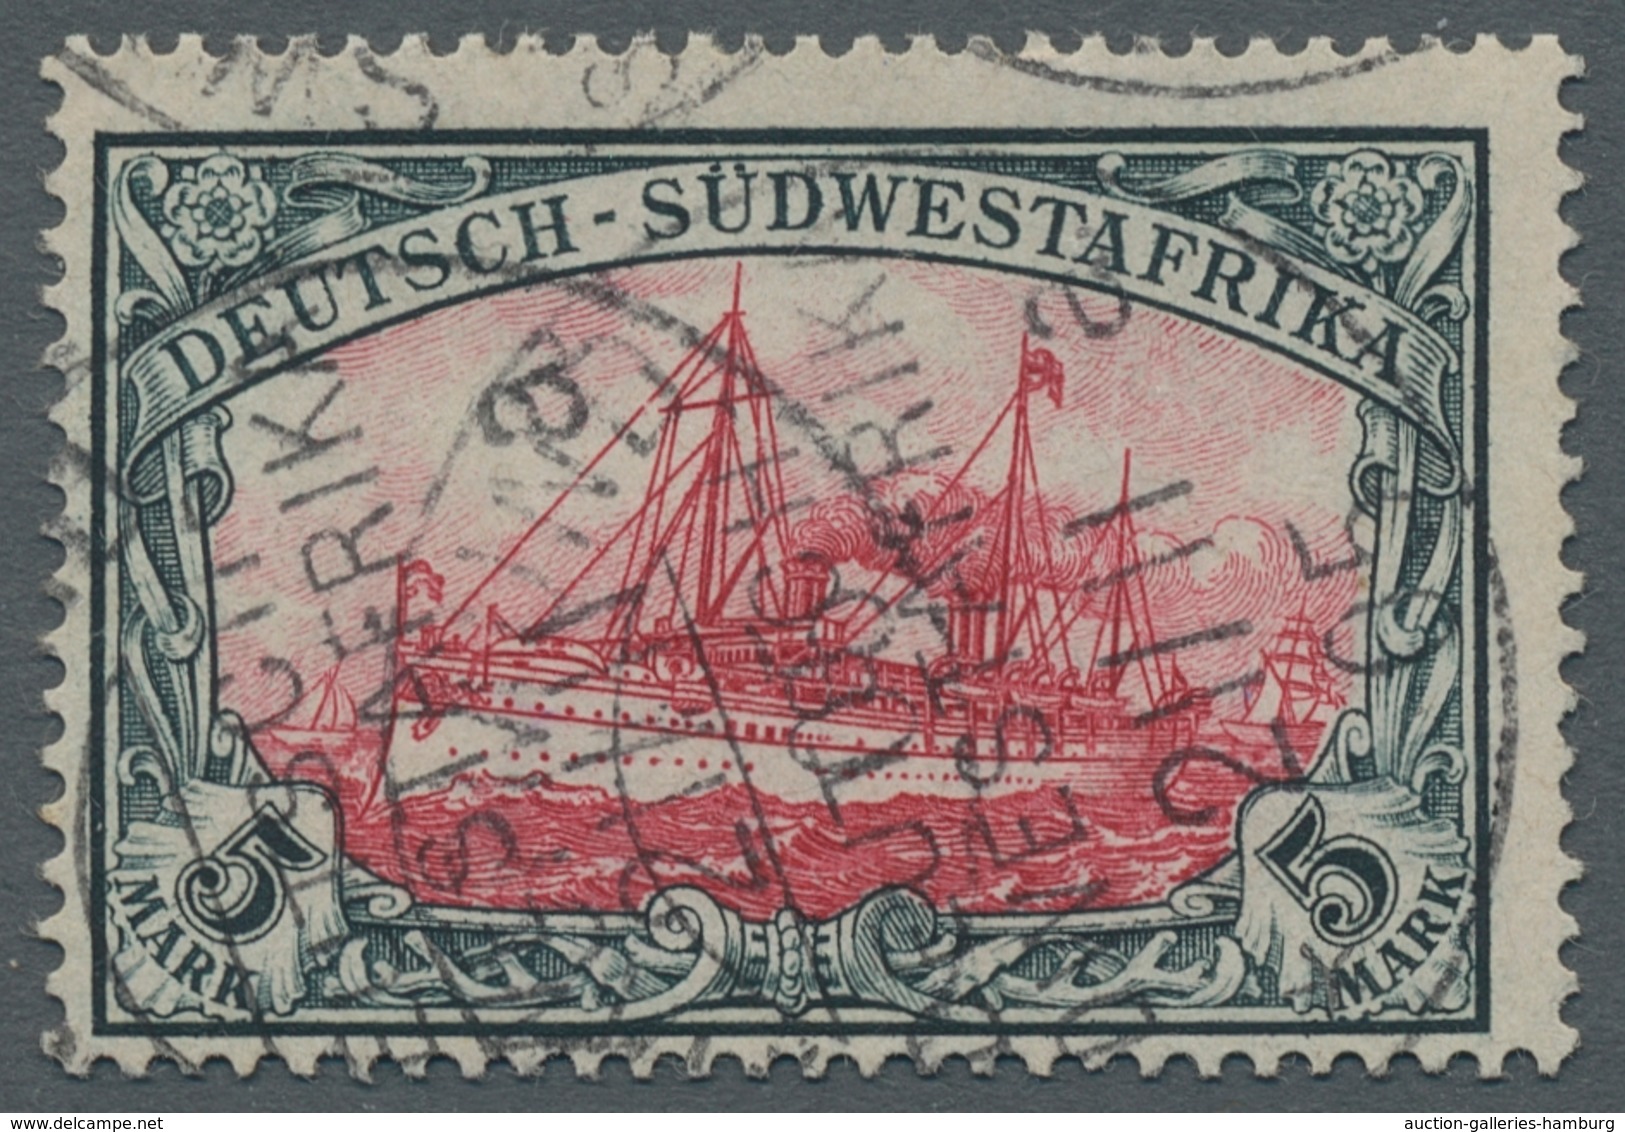 Deutsche Auslandspostämter + Kolonien: 1884-1919, reichhaltige gestempelt Sammlung im neuwertigen "L